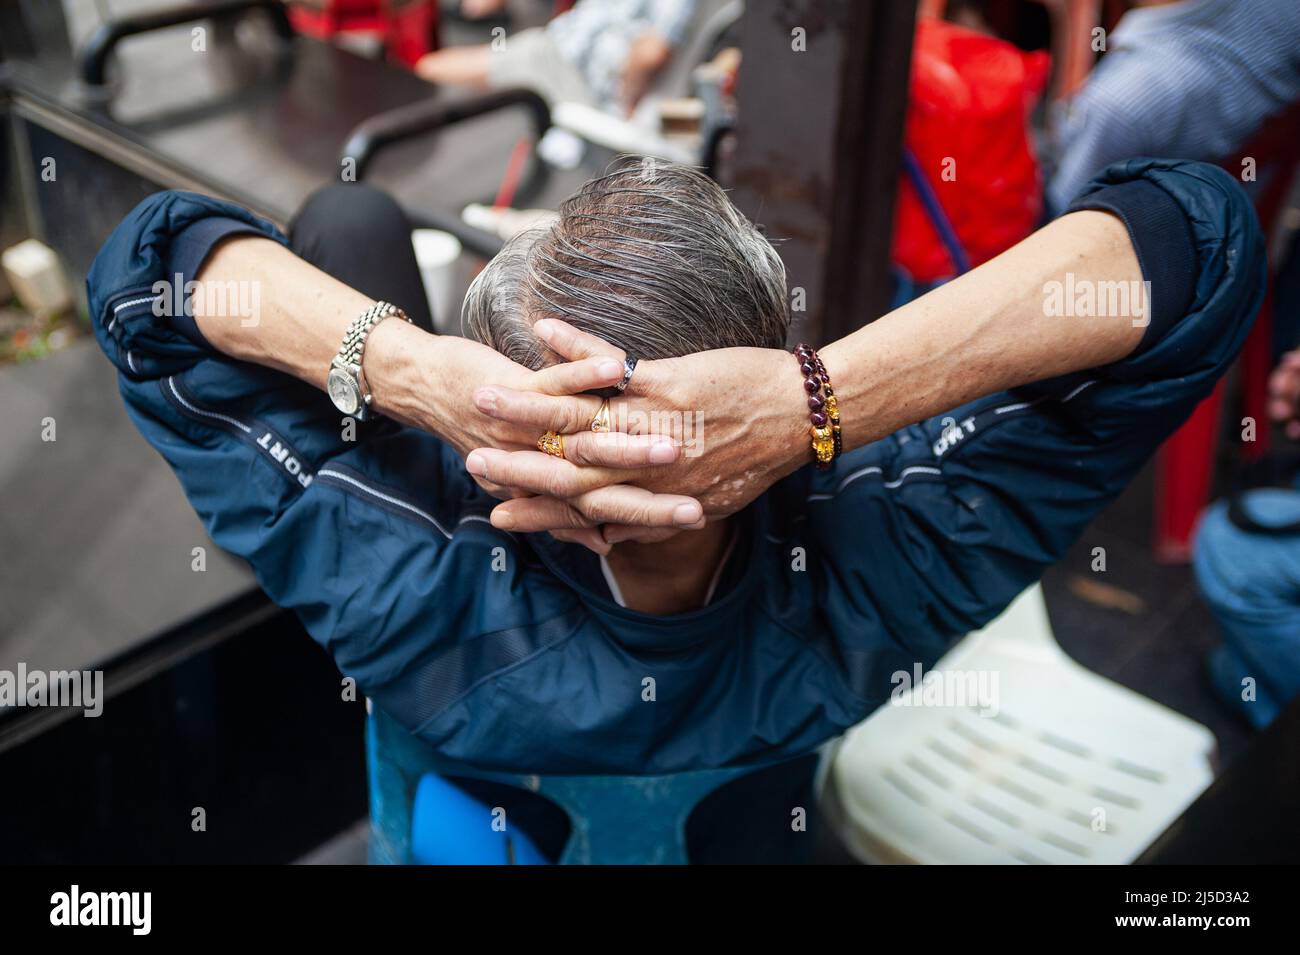 24 febbraio 2019, Singapore, Repubblica di Singapore, Asia - il primo piano mostra le mani intrangolate dietro la testa di un anziano a Chinatown indossando un orologio da polso, un braccialetto e diversi anelli sulle sue dita. [traduzione automatizzata] Foto Stock